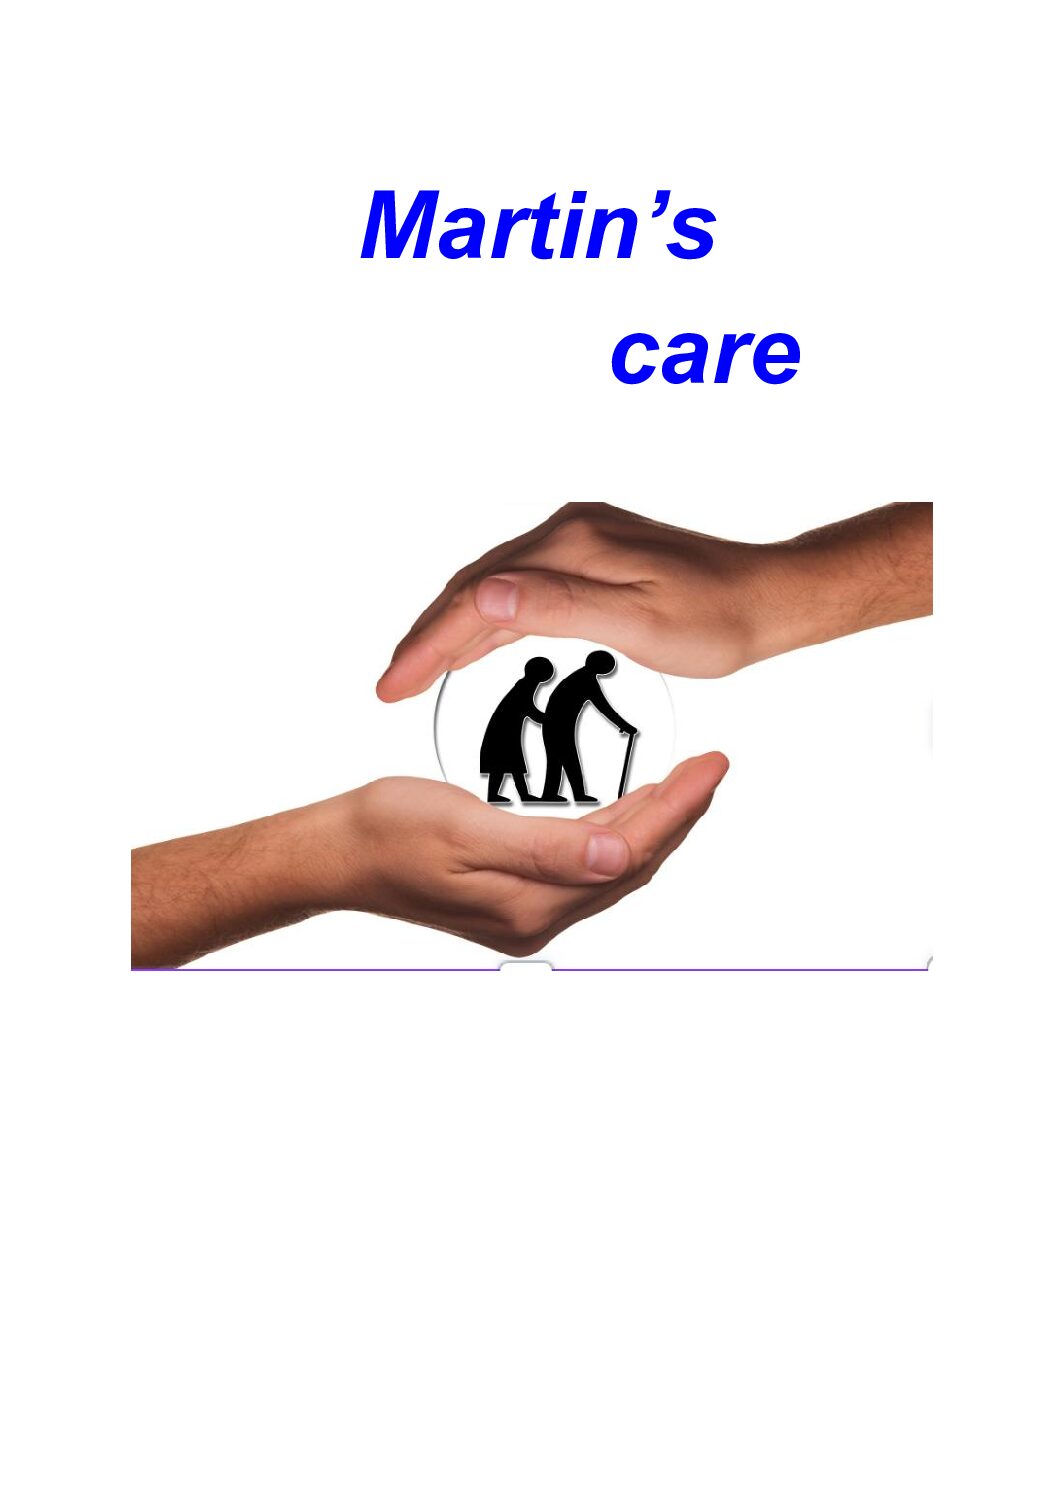 Martin's care